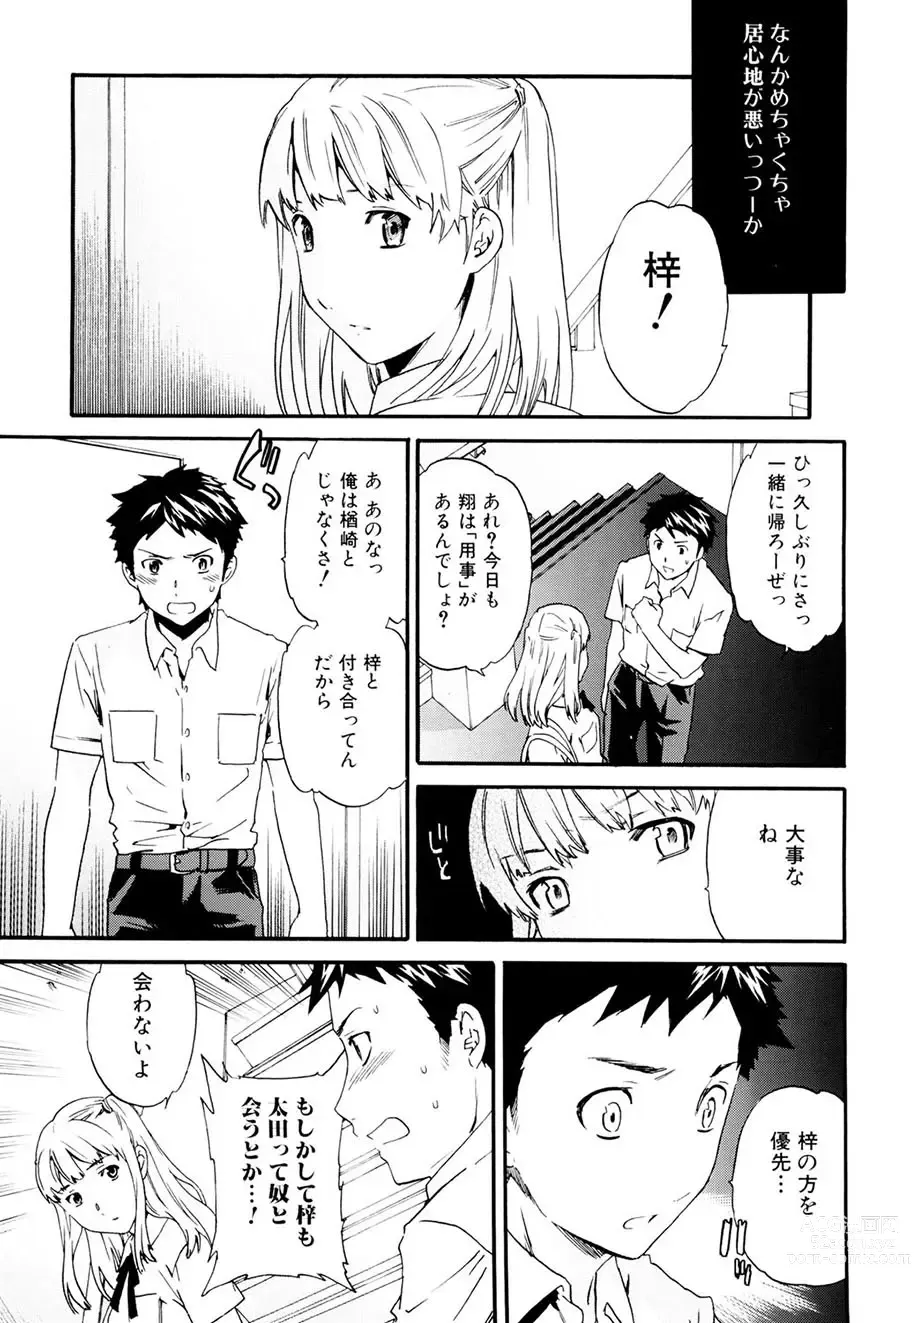 Page 134 of manga Shitai Kara Suru no